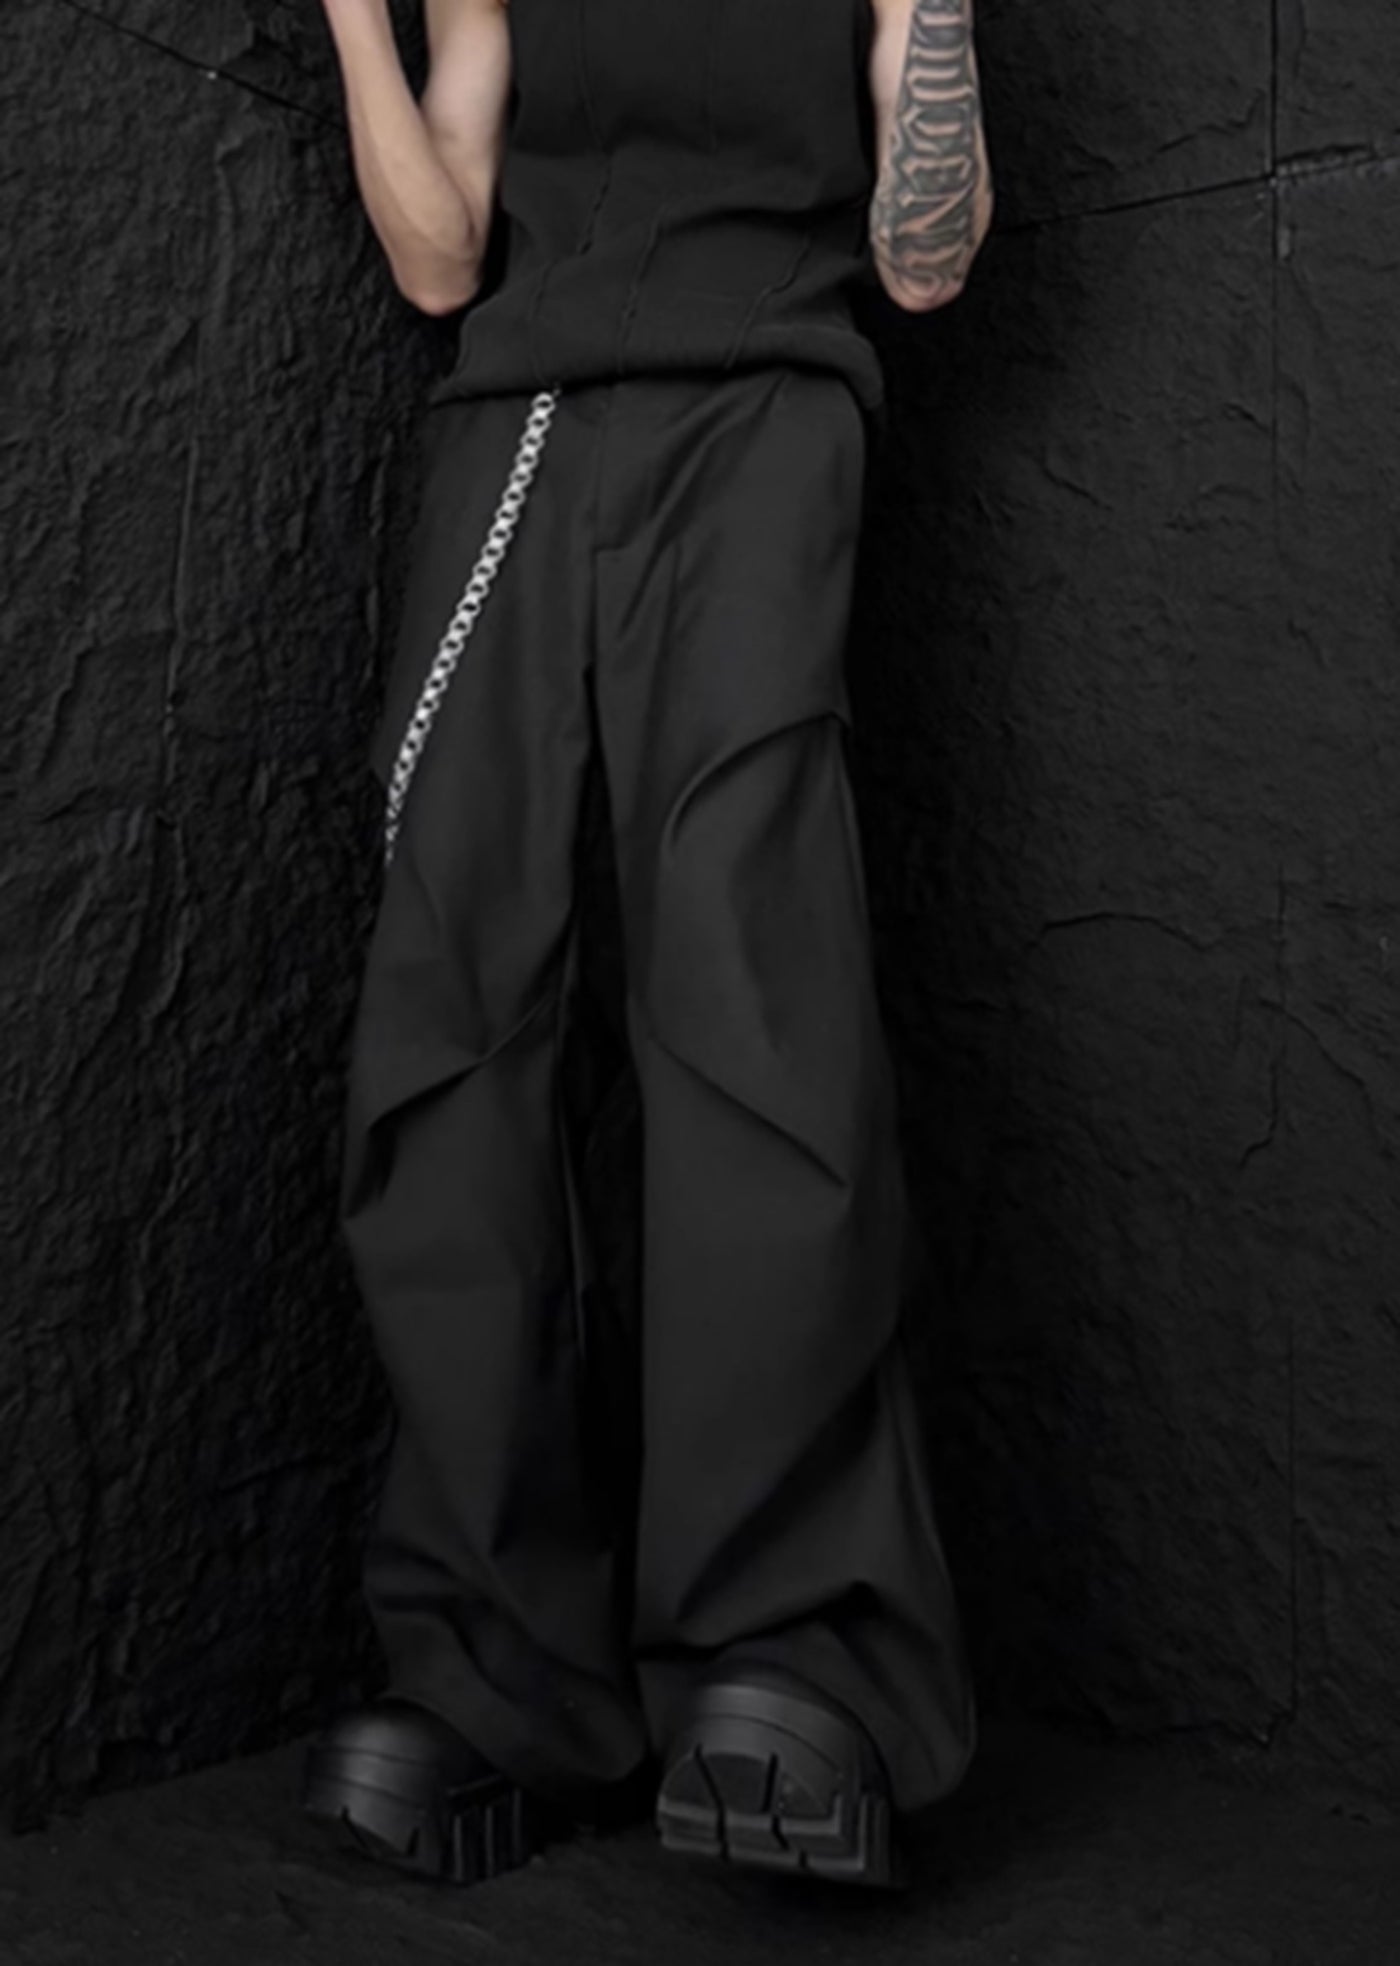 【76street】Overall tuck-in bell road silhouette slacks pants  ST0014